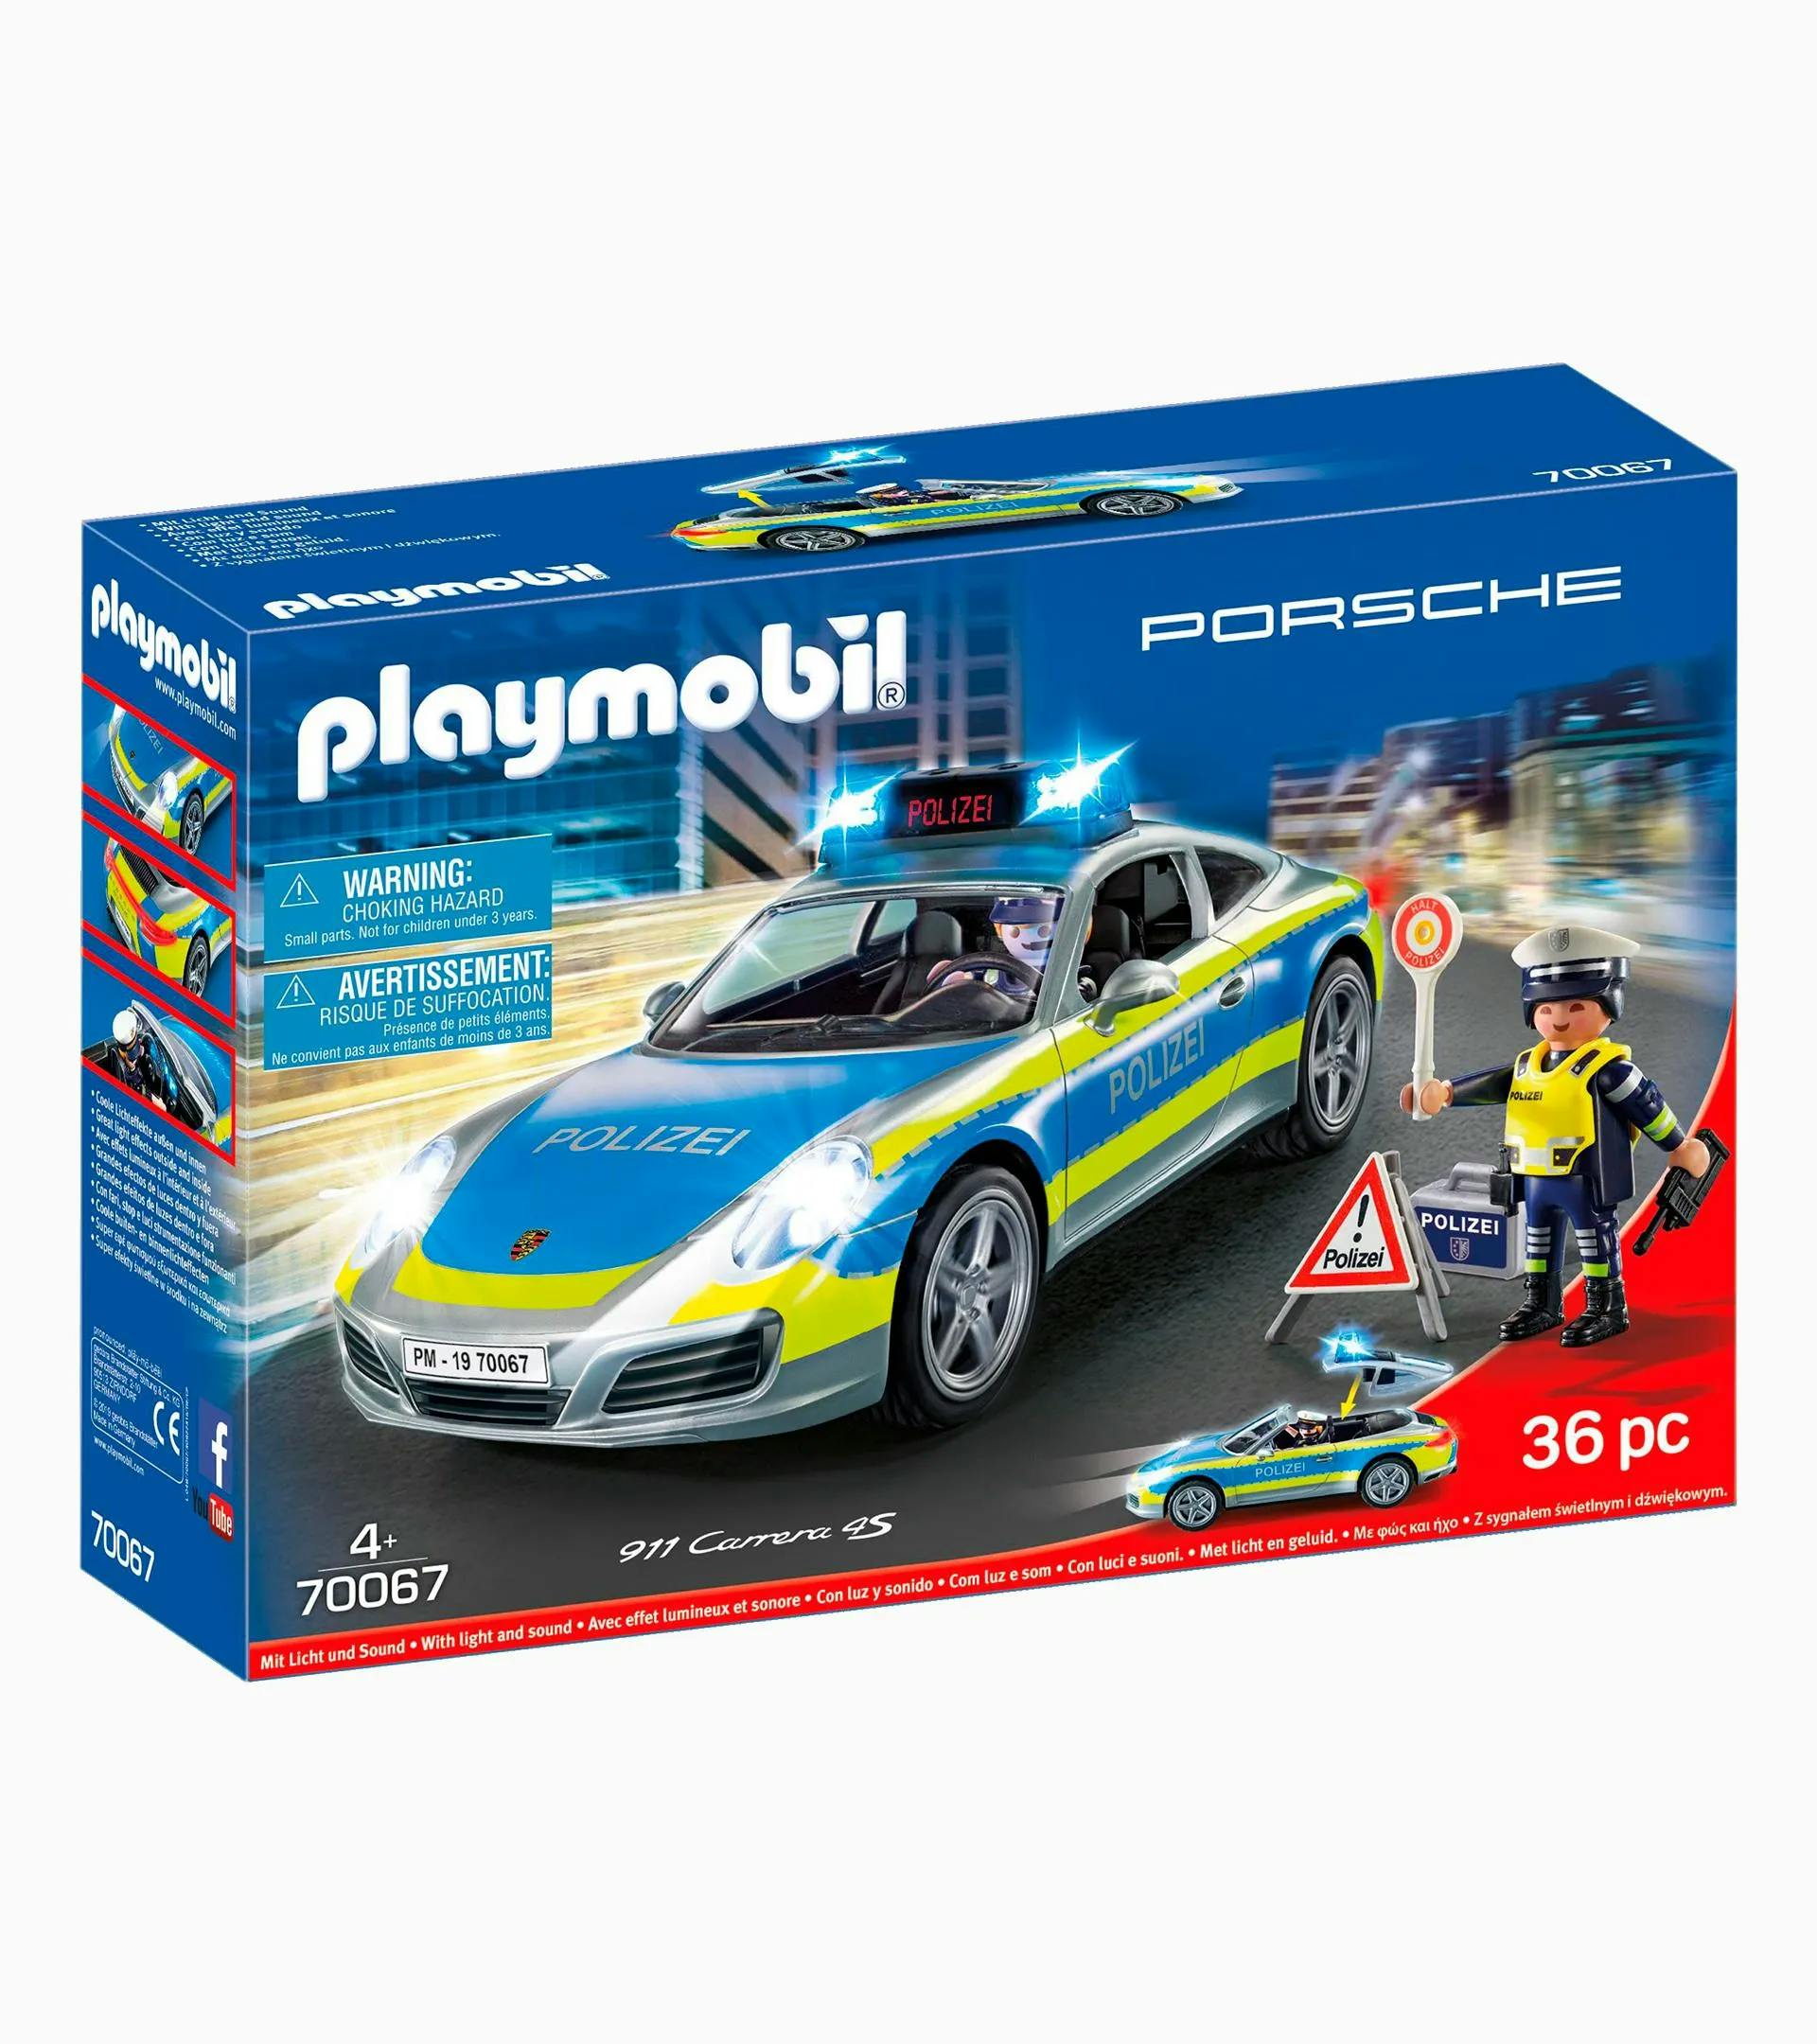 Auto de police playmobil enfants kids voiture